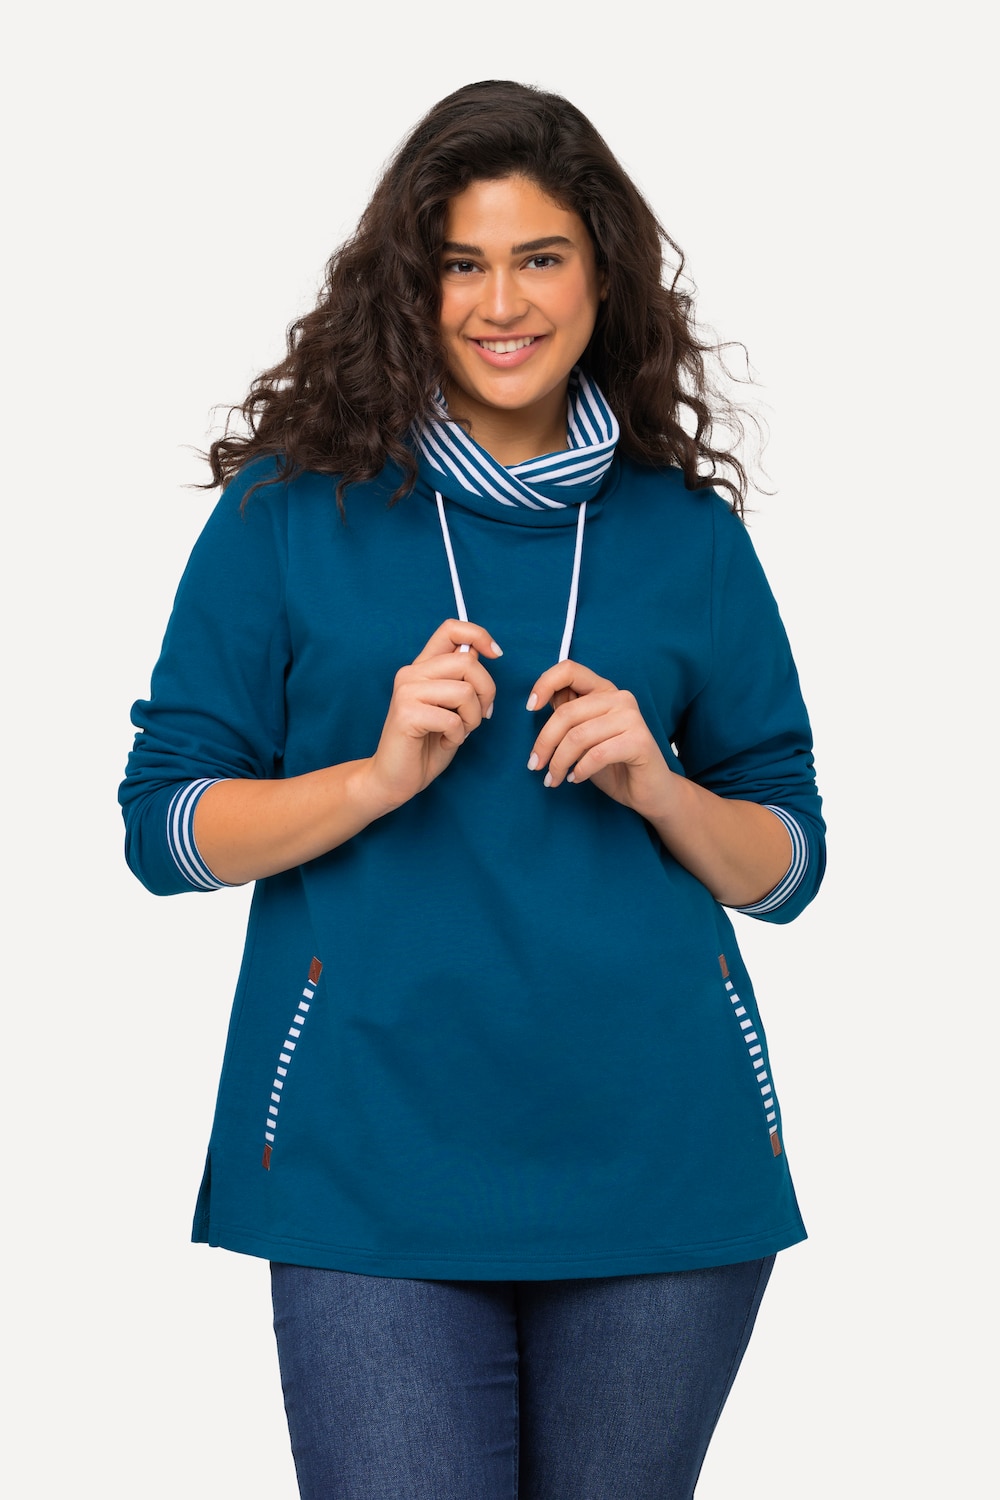 Grote Maten sweatshirt, Dames, blauw, Maat: 42/44, Katoen/Polyester, Ulla Popken